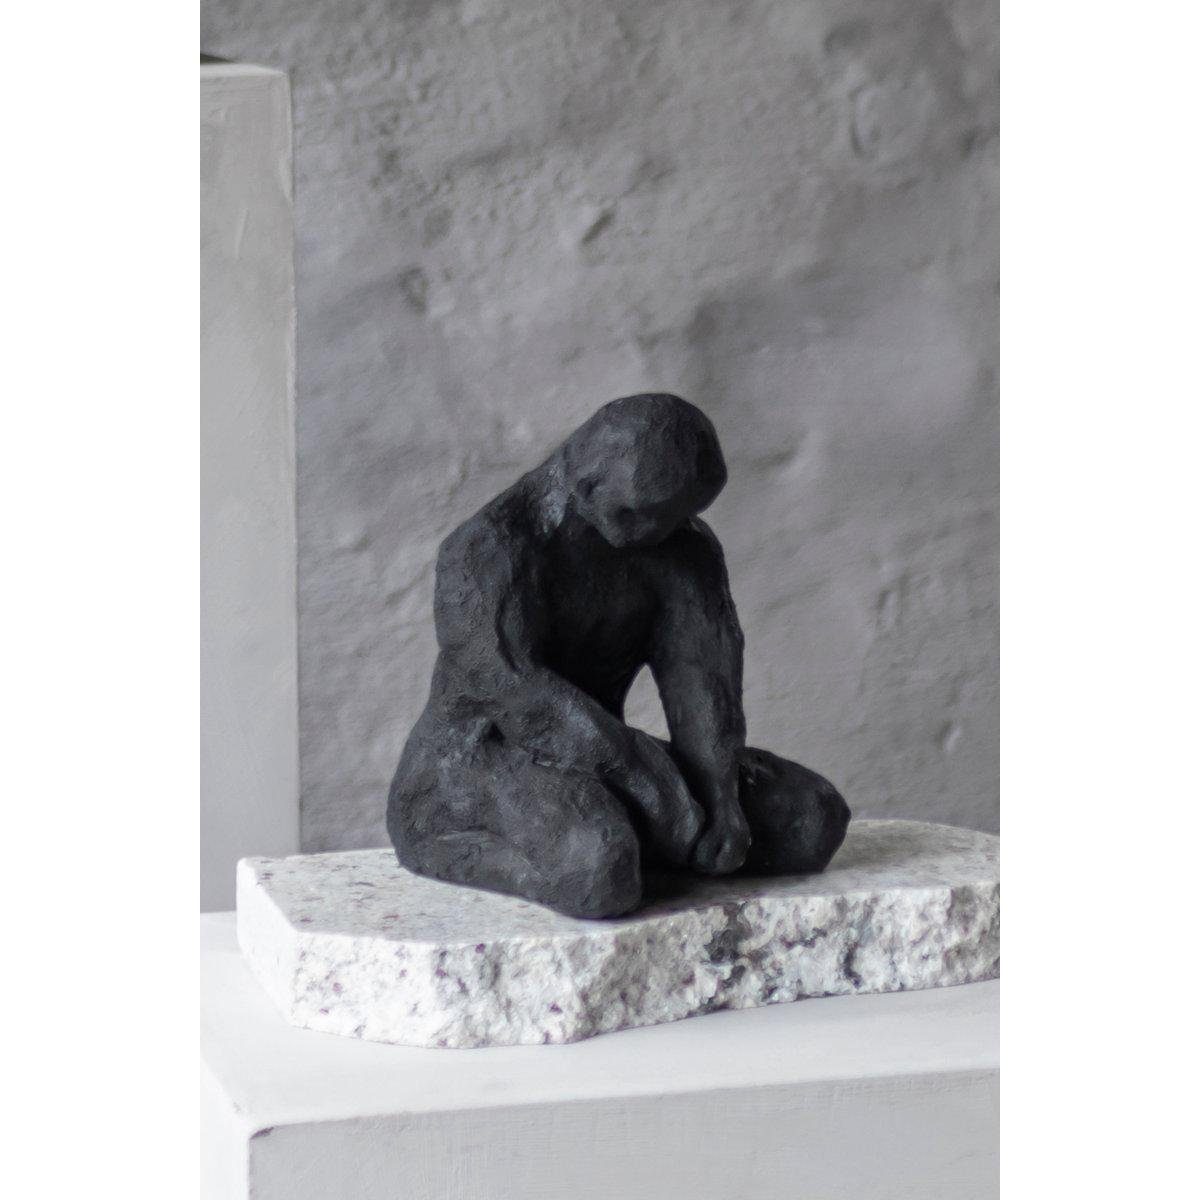 Black Mette Skulptur Skulptur Piece Meditating Ditmer Man Art